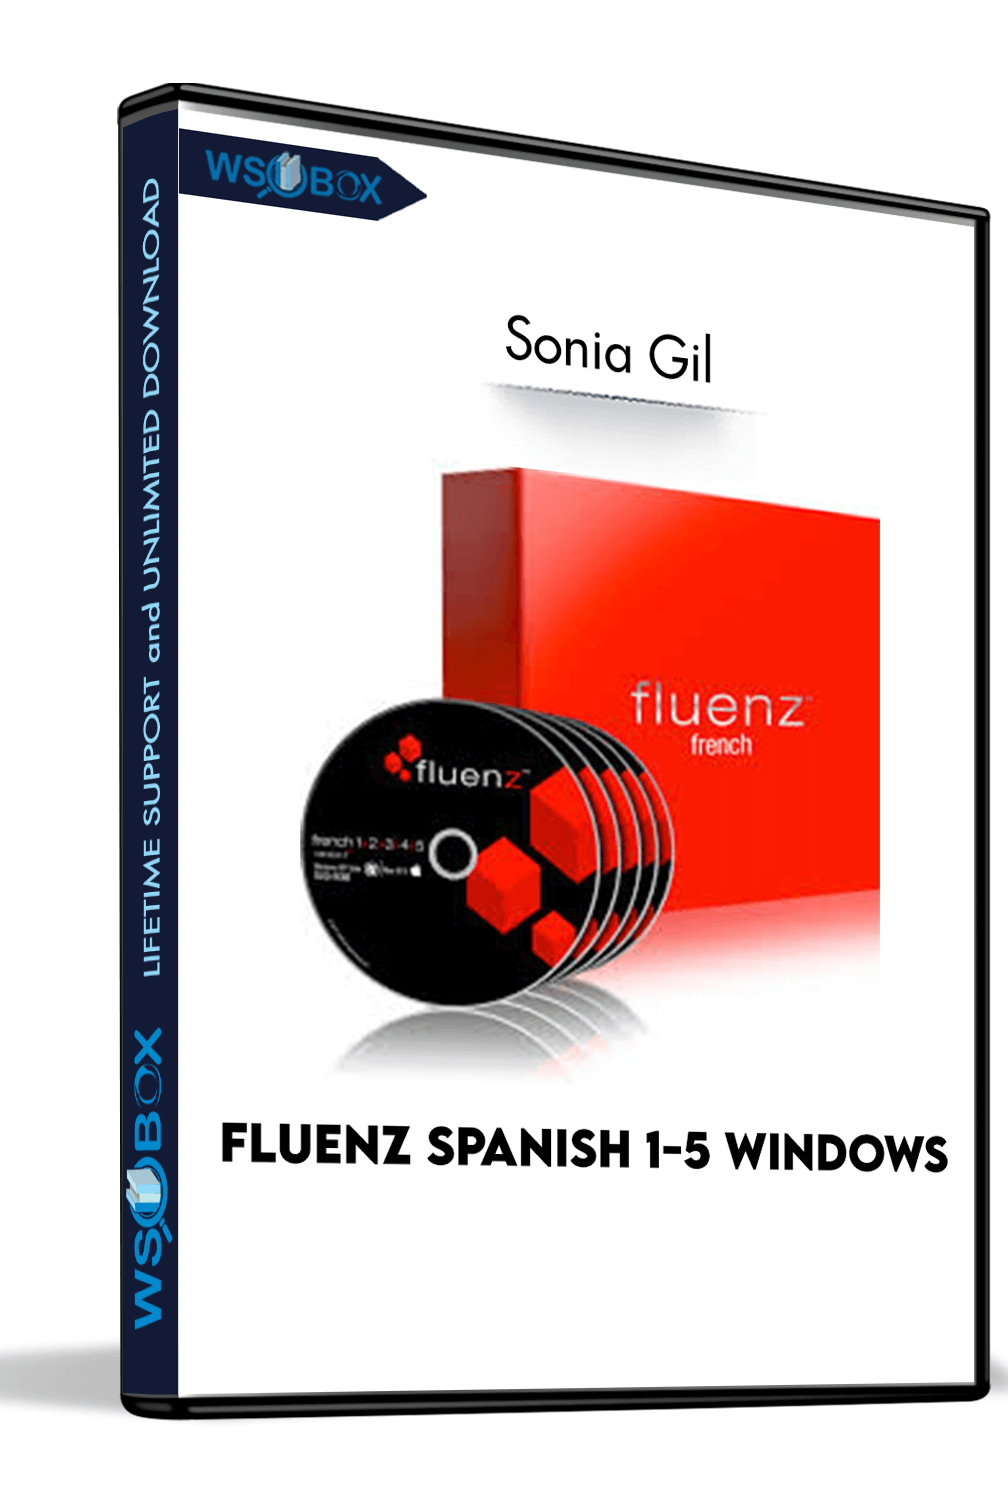 download fluenz to computer